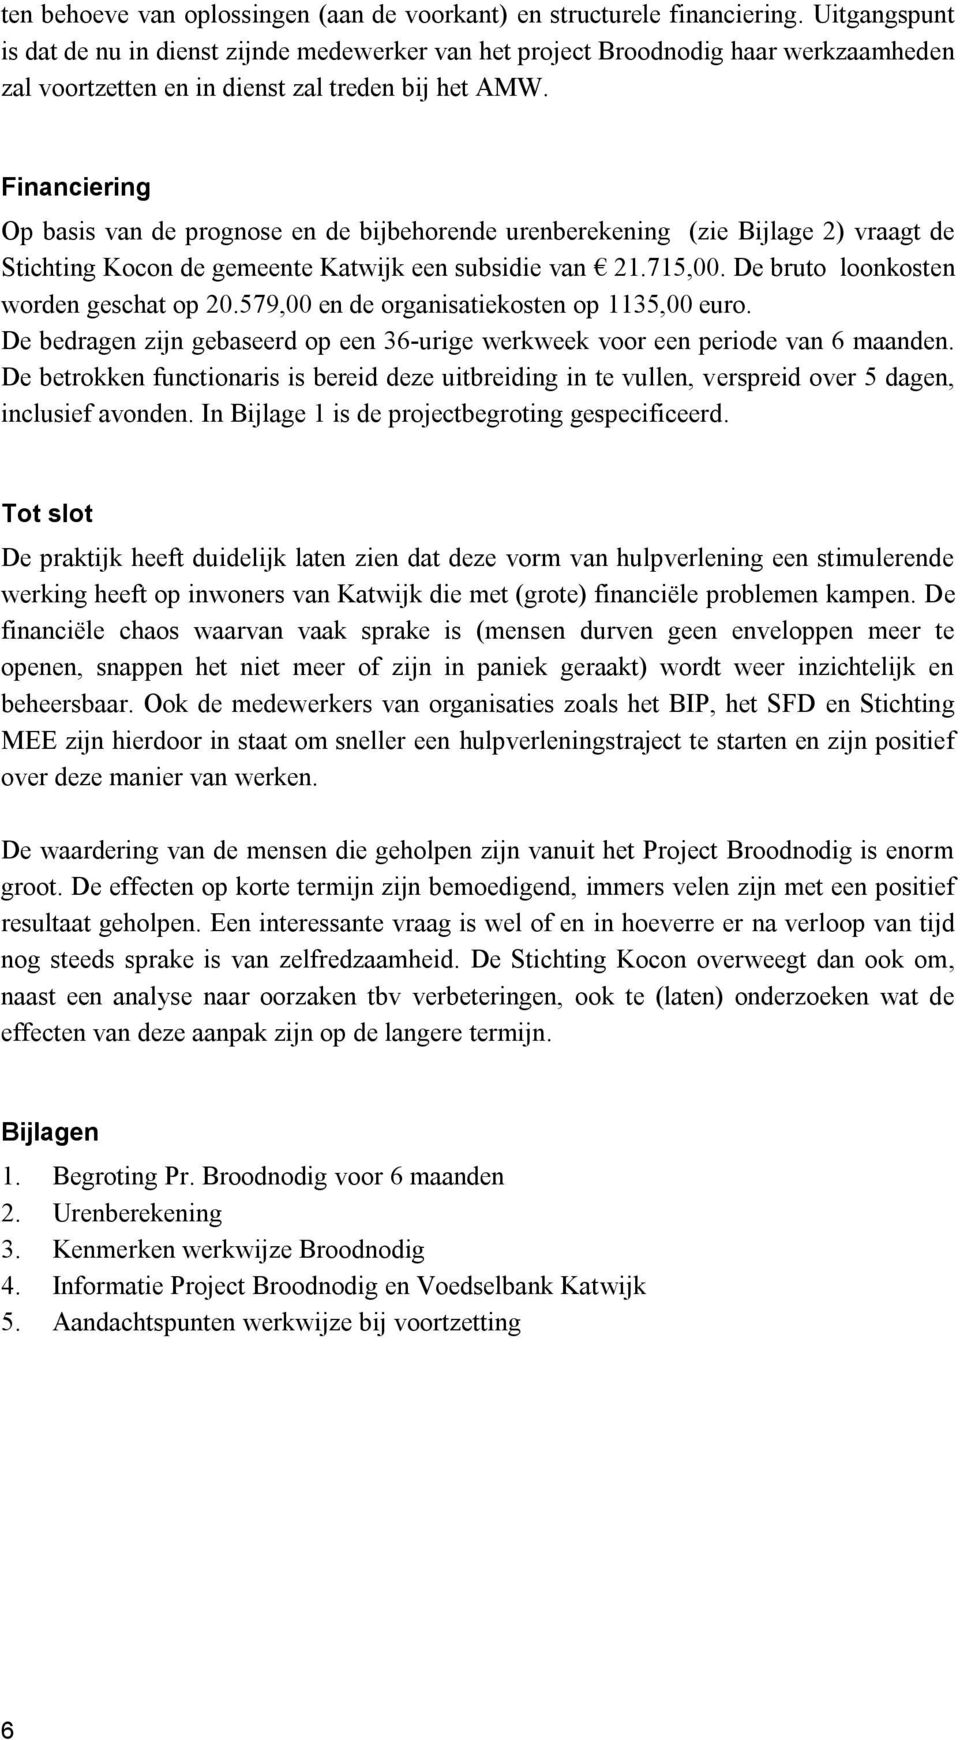 Financiering Op basis van de prognose en de bijbehorende urenberekening (zie Bijlage 2) vraagt de Stichting Kocon de gemeente Katwijk een subsidie van 21.715,00.